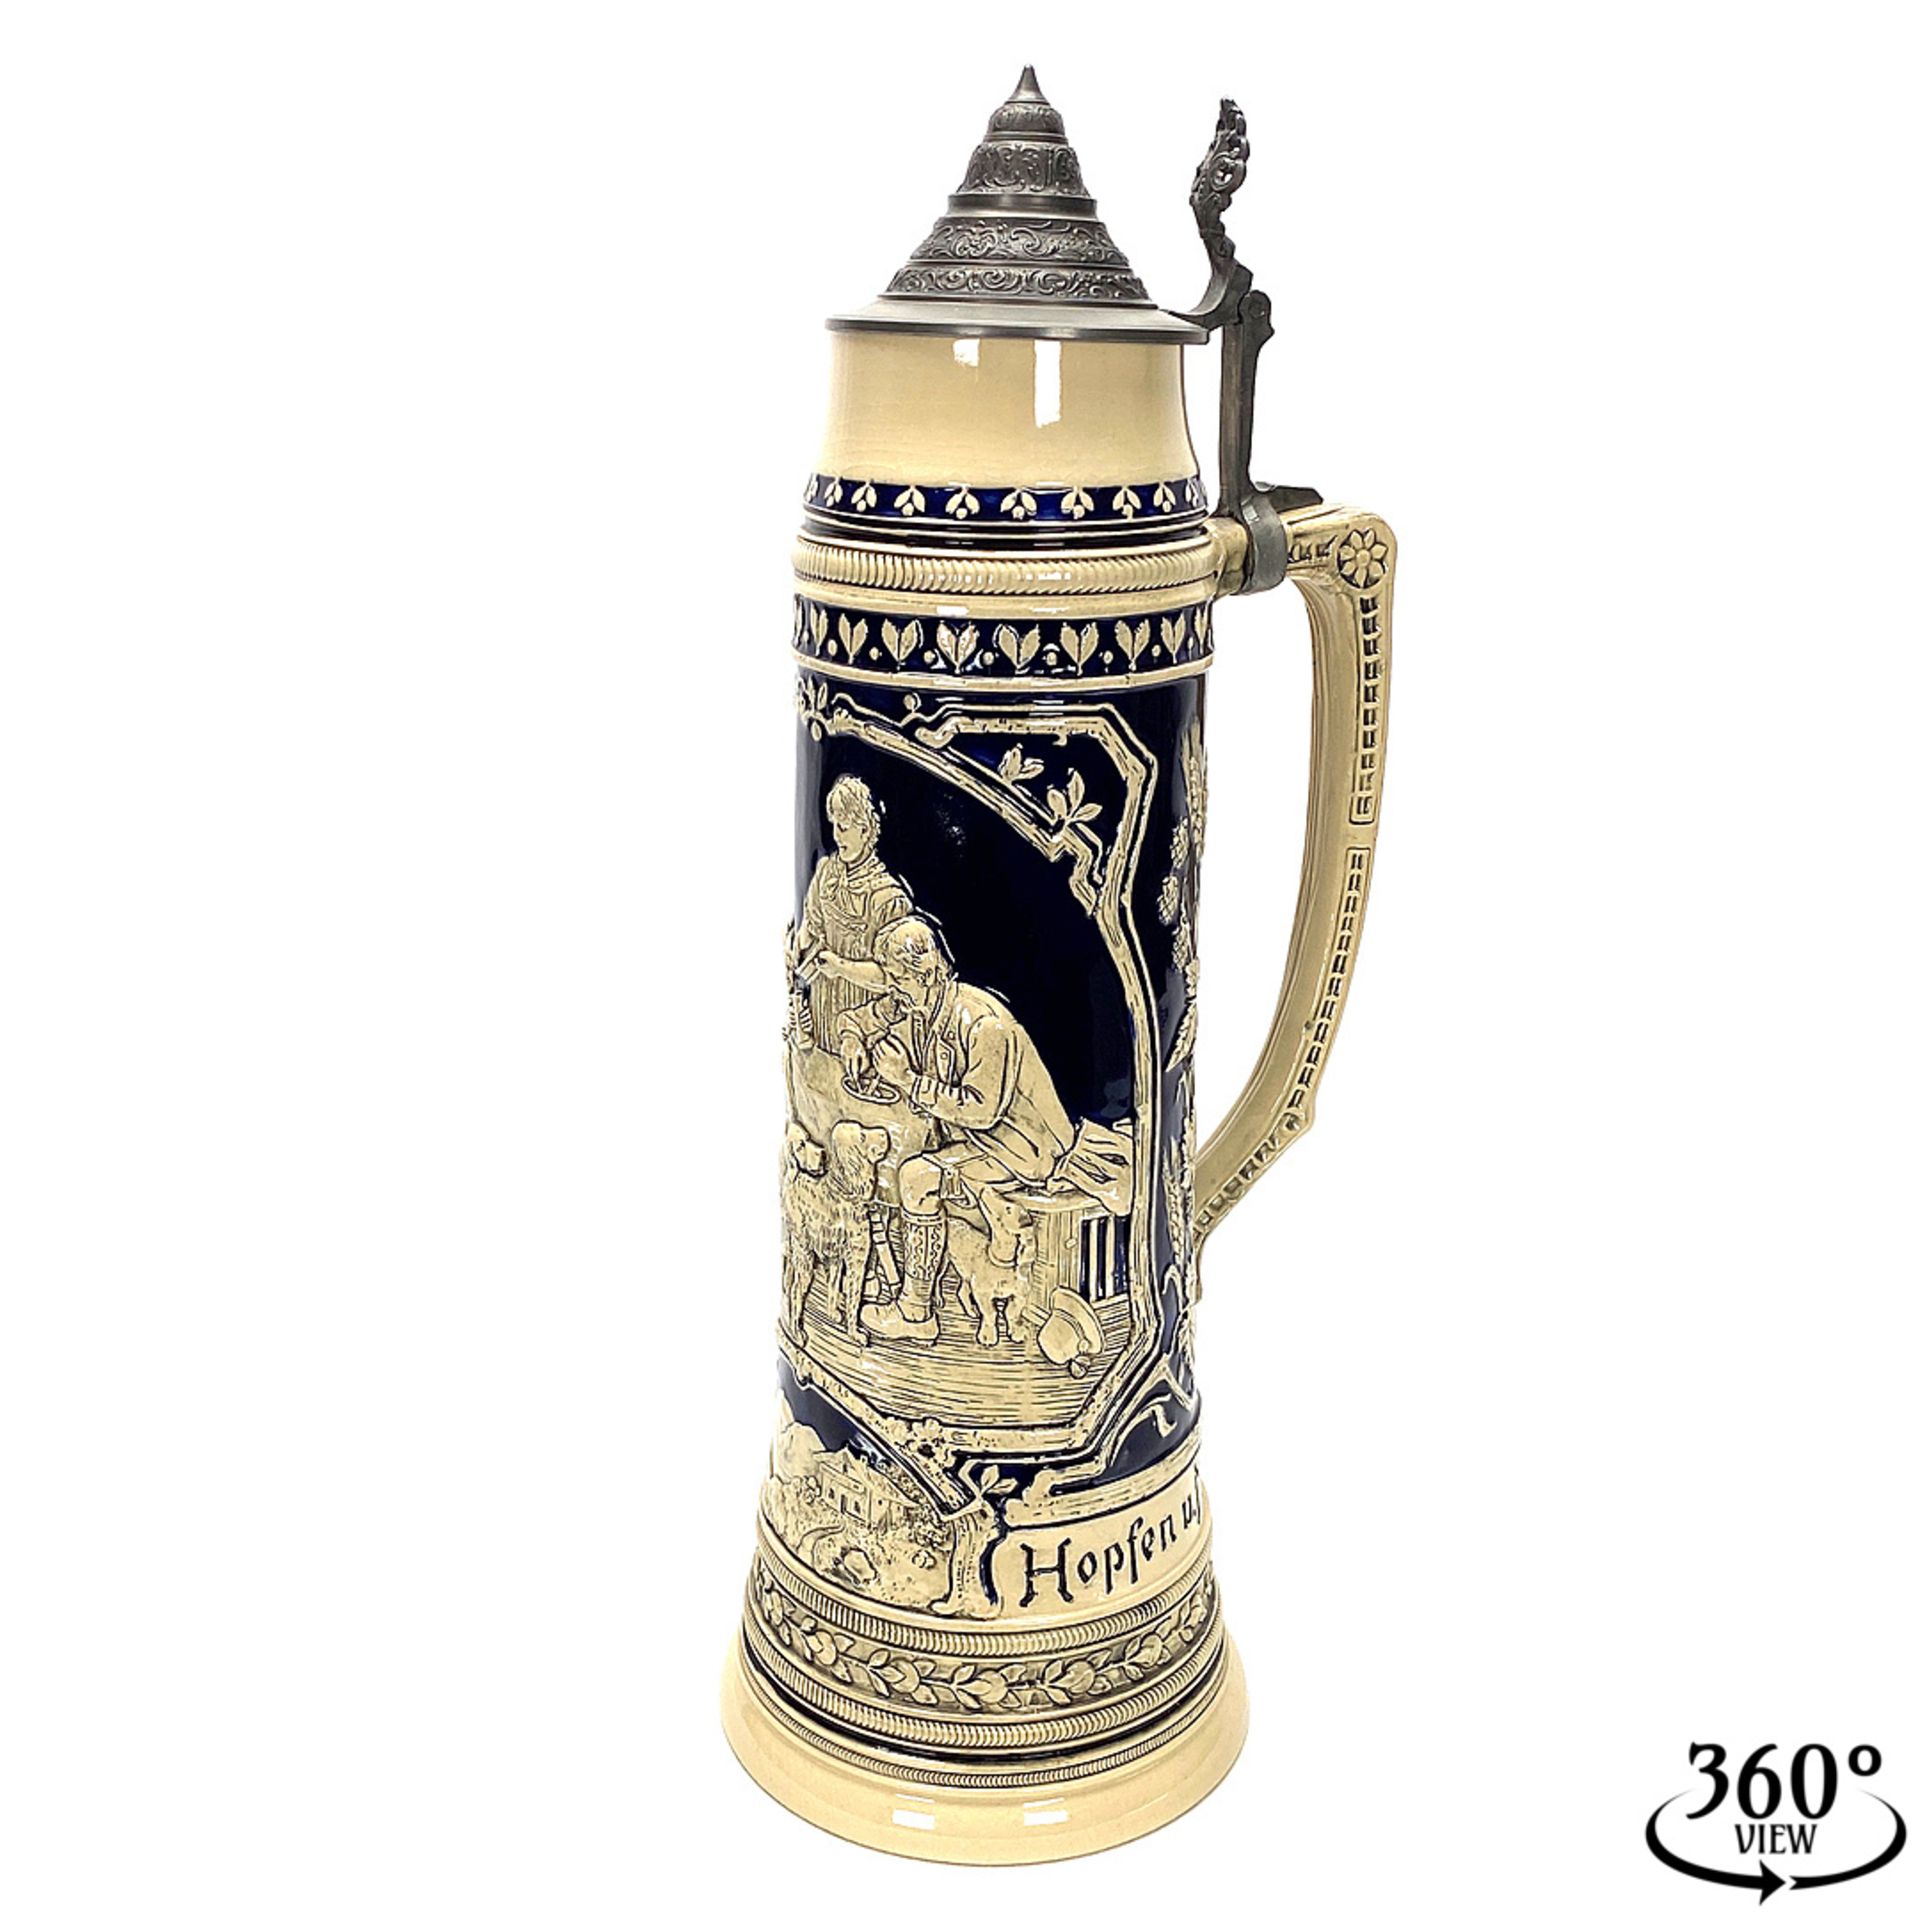 Thewalt /Westerwald stoneware jug, around 1900